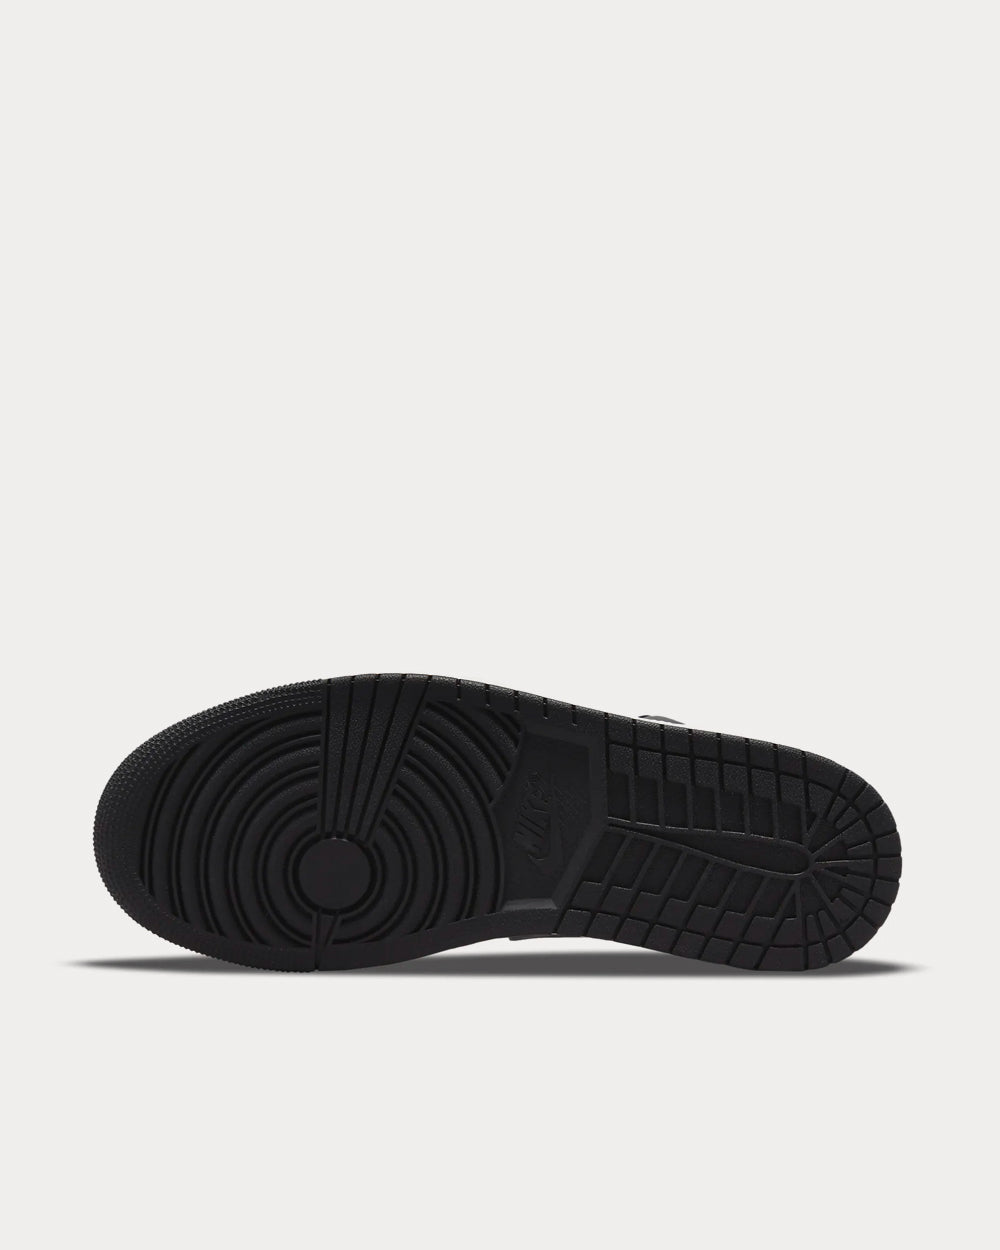 Jordan - Air Jordan 1 Black / White / Particle Grey Low Top Sneakers